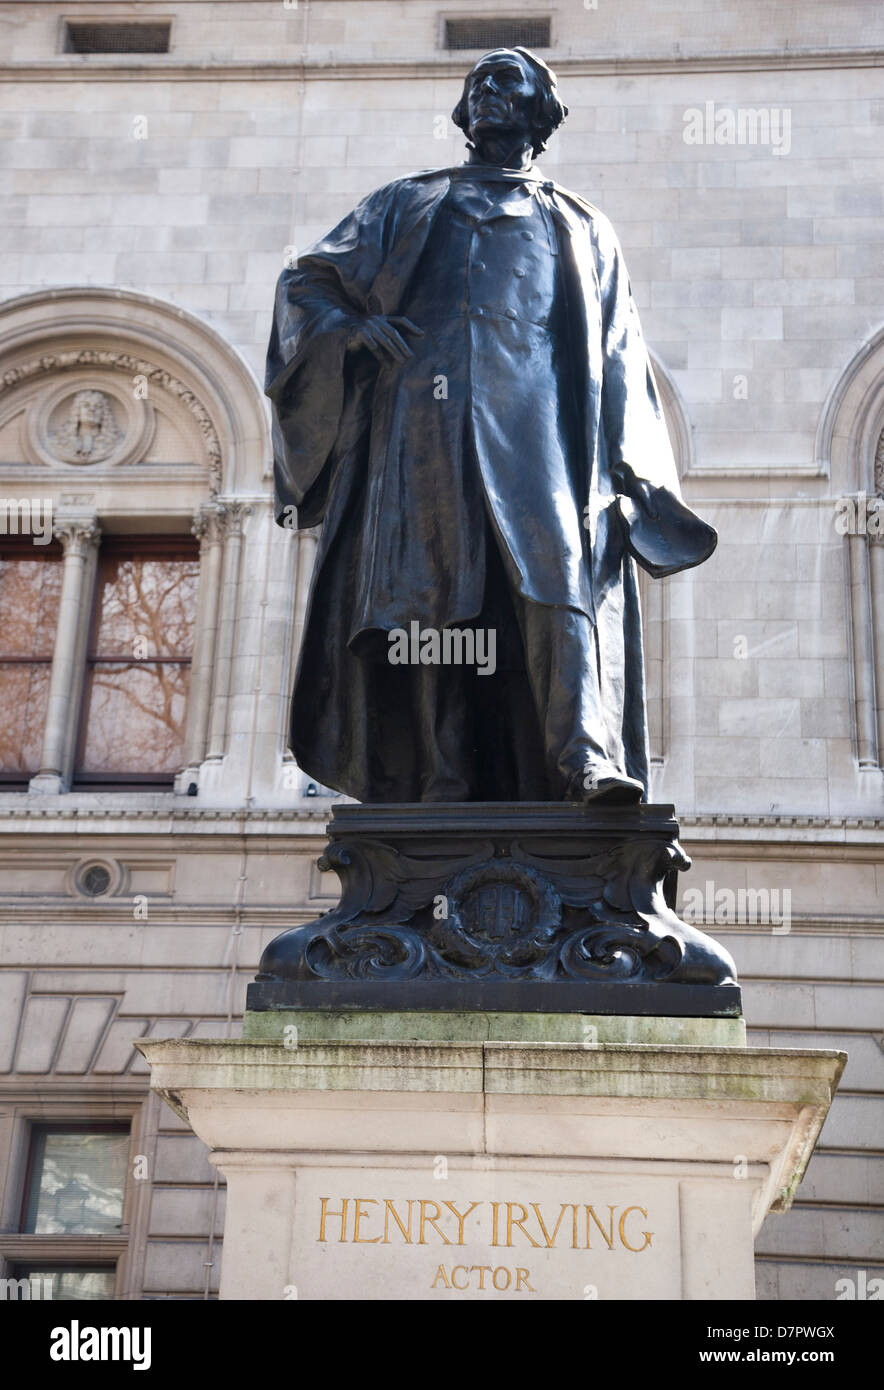 Statue de Henry Irving en dehors de la National Portrait Gallery, West End, Londres, Angleterre, Royaume-Uni Banque D'Images